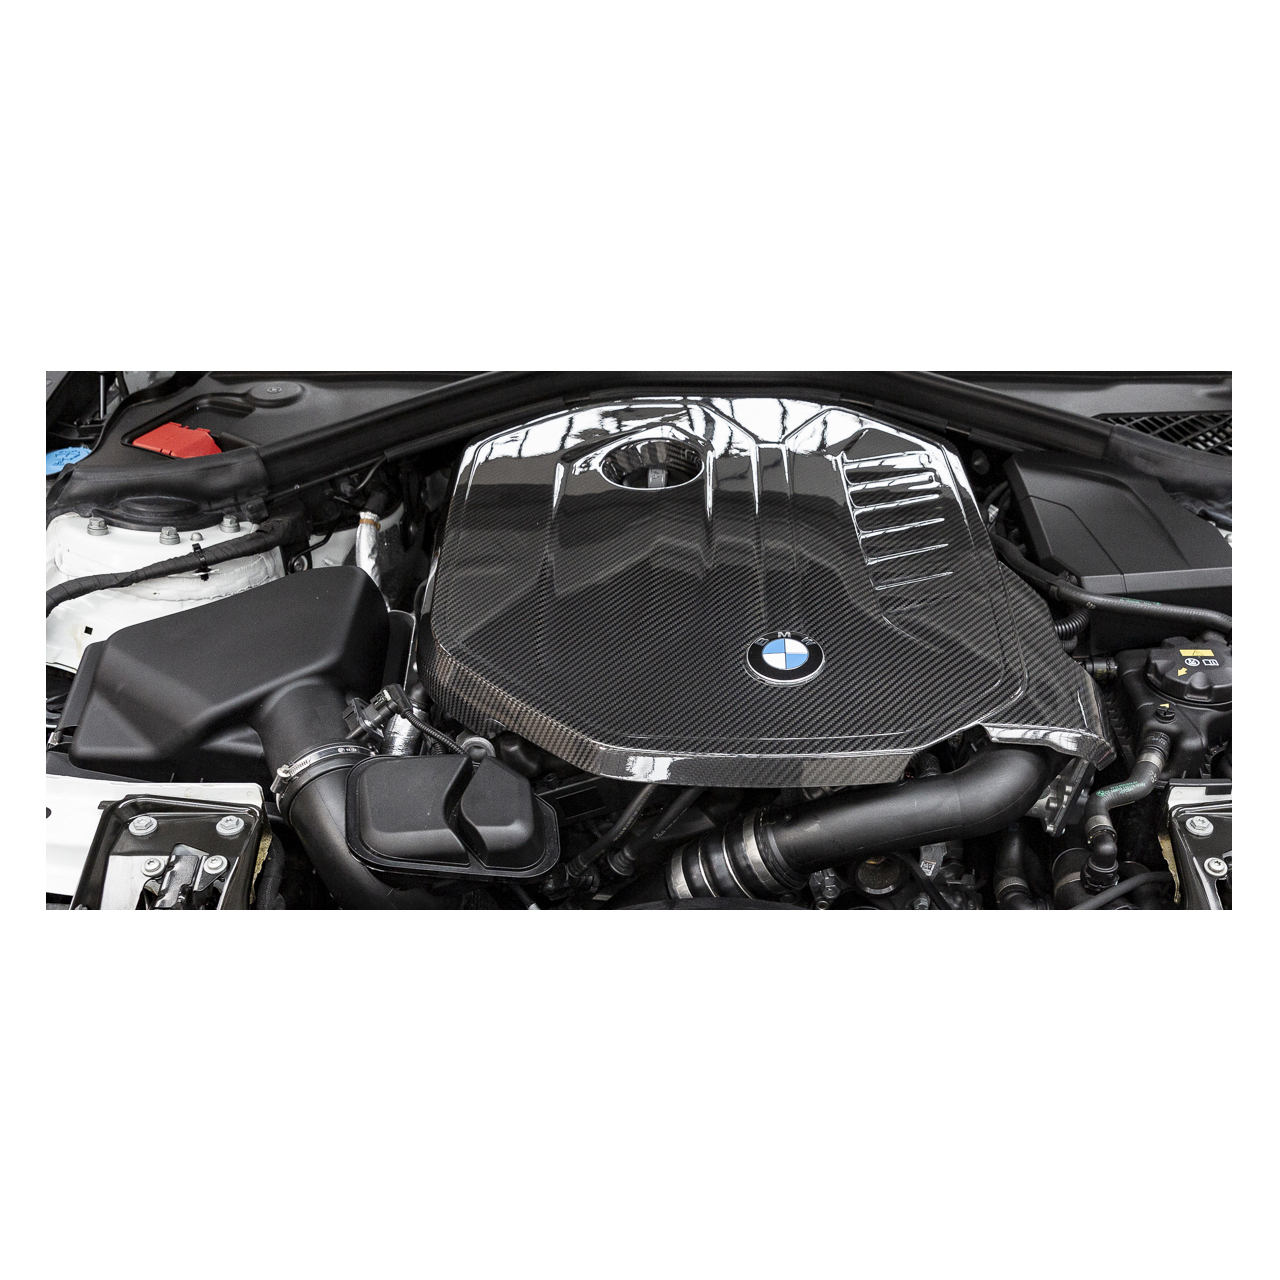 Cache moteur en fibre de carbone Eventuri adapté pour B58 X40i MX40i Z4  M40i BMW » Burkhart Engineering